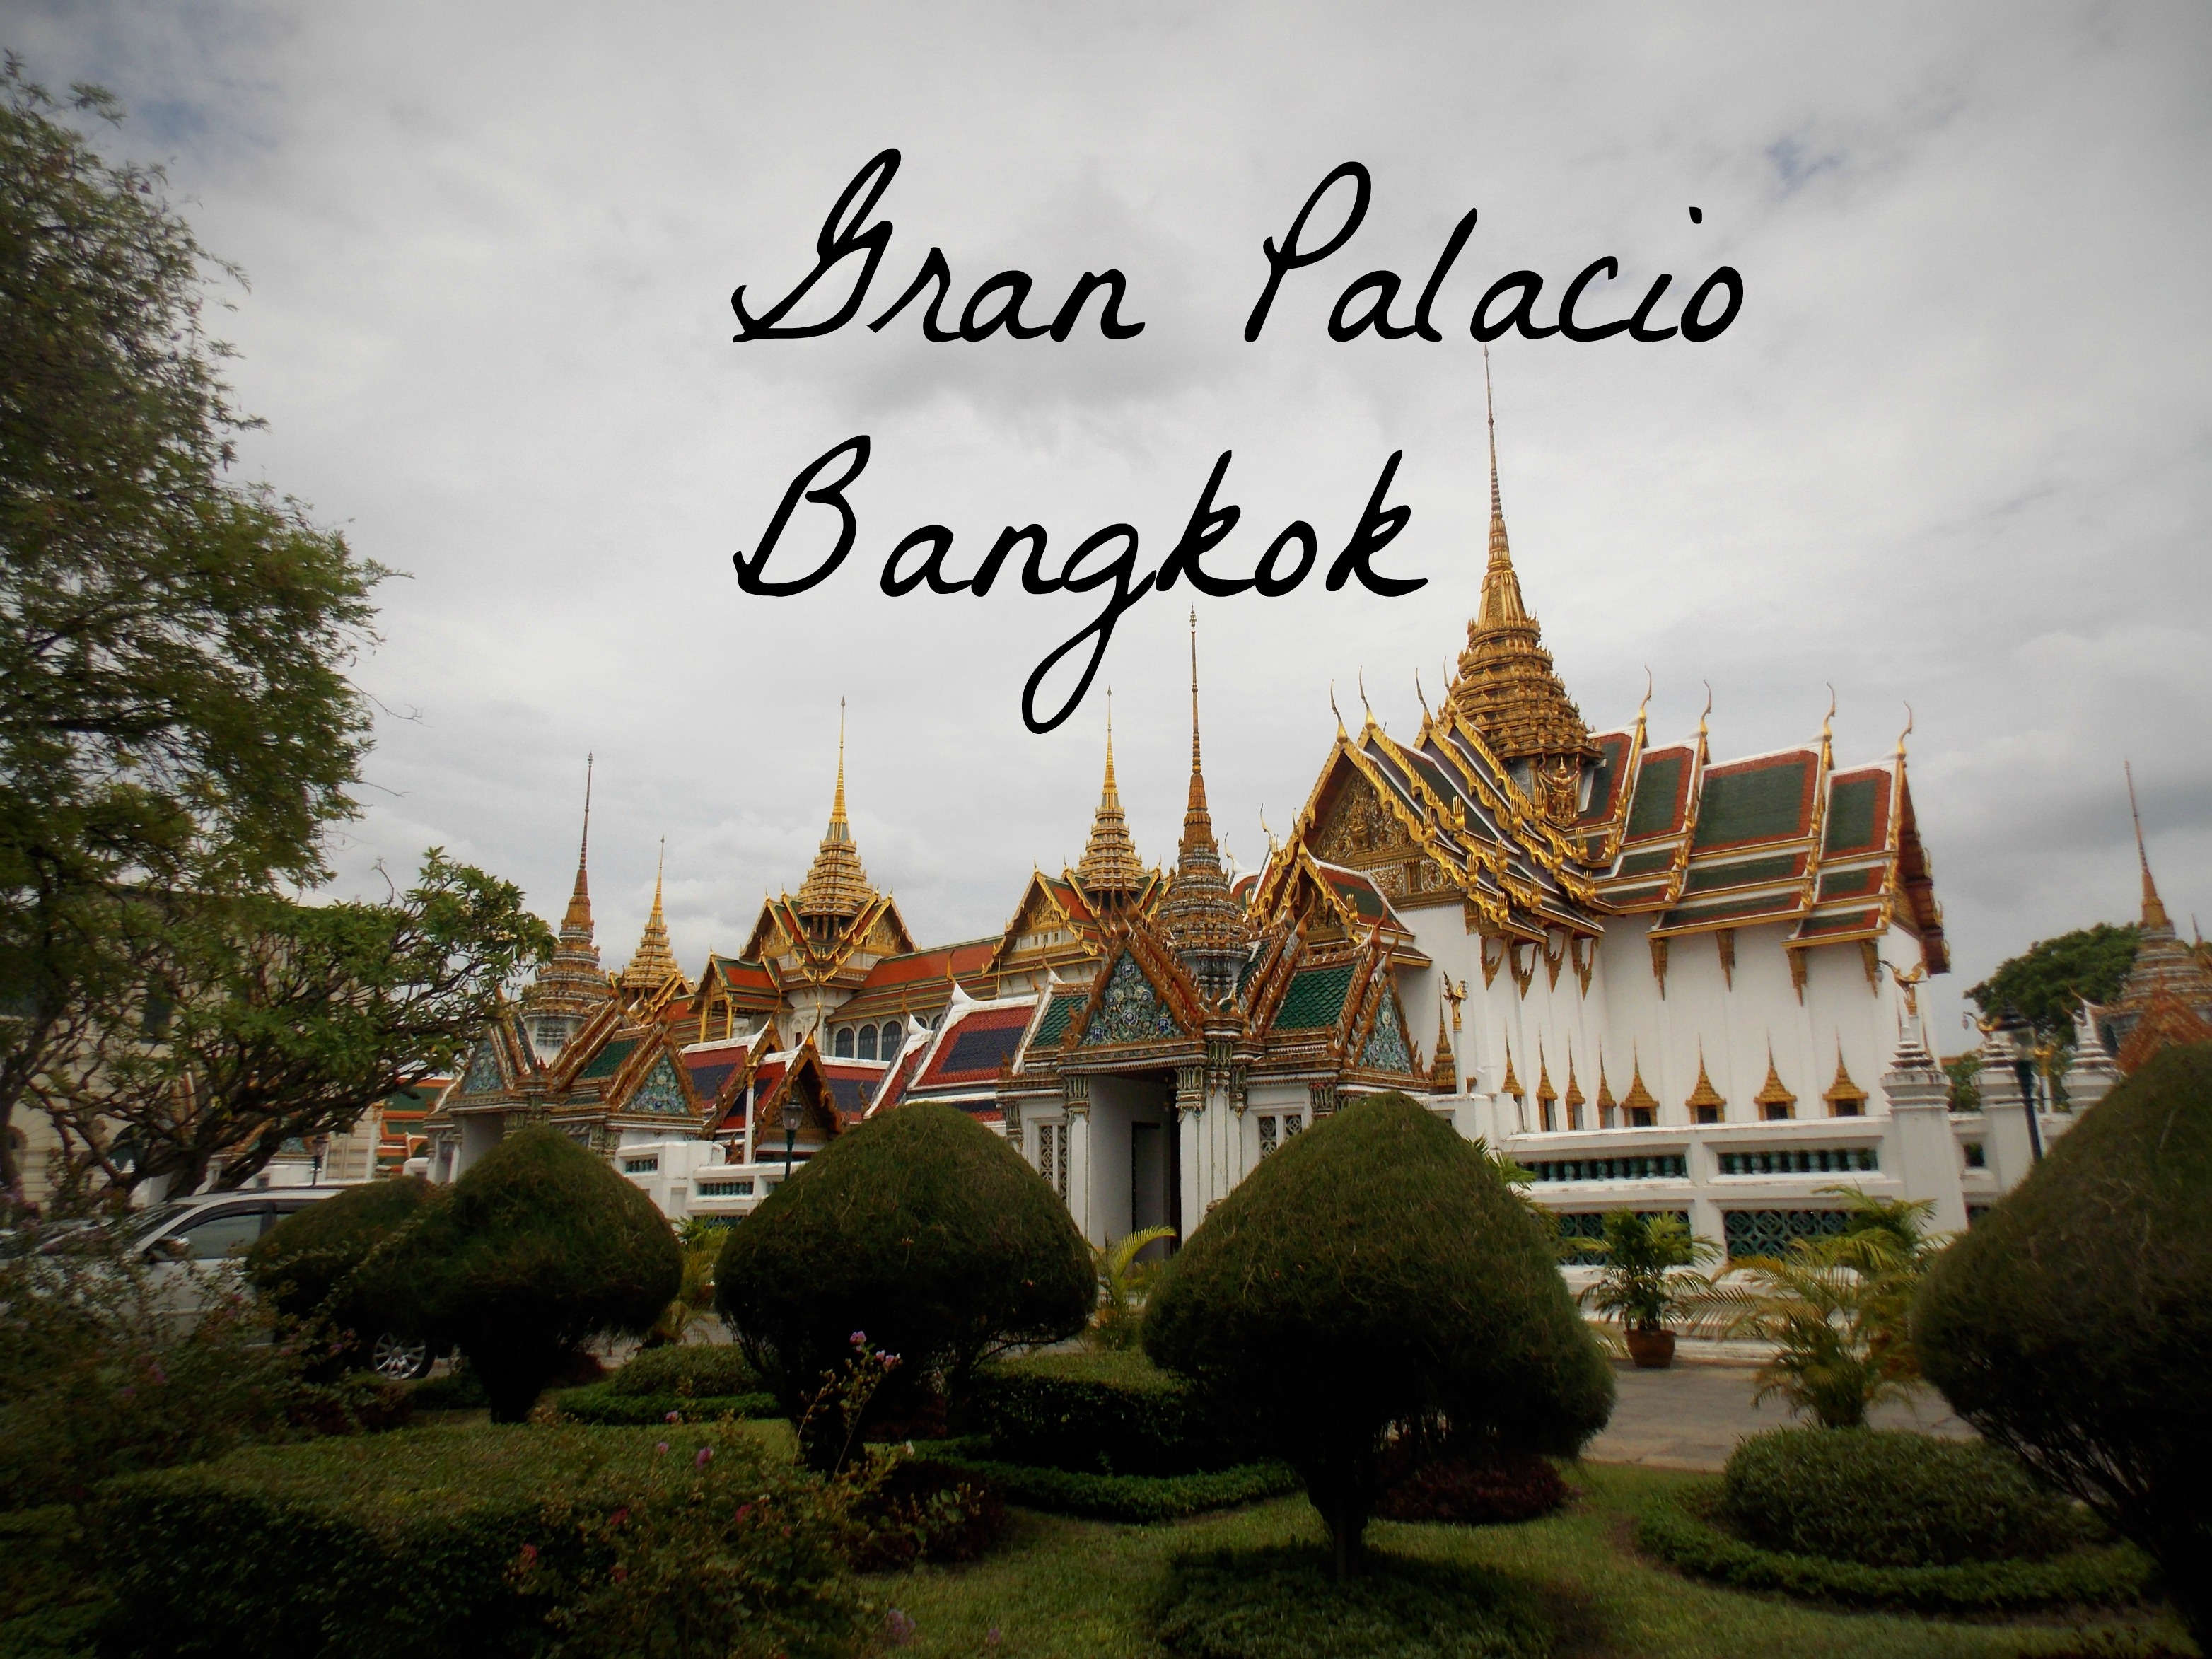 El Gran Palacio de Bangkok: una visita obligatoria!